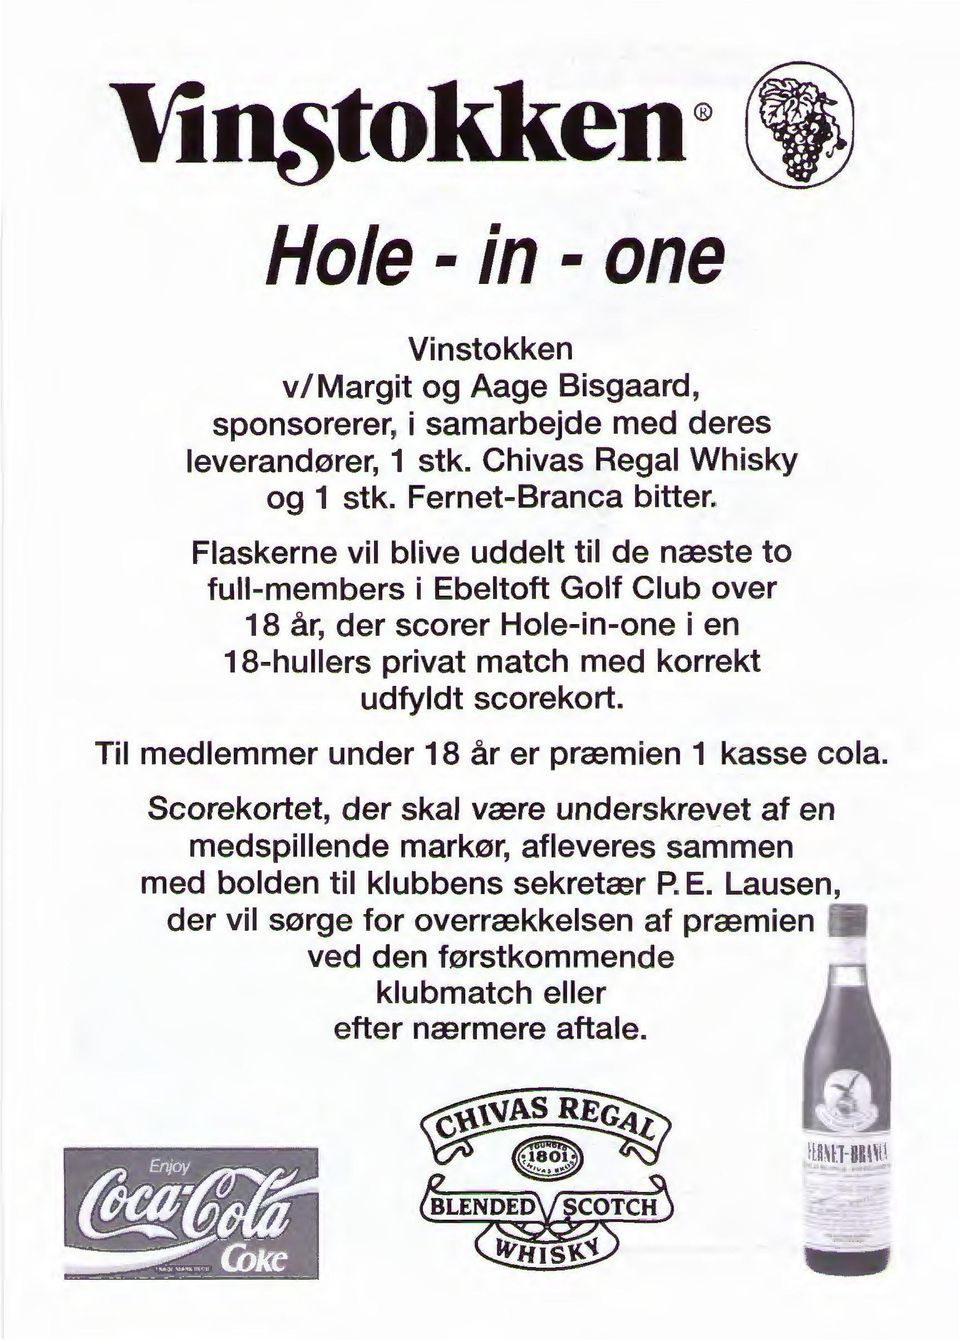 Flaskerne vil blive uddelt til de næste to full-members i Ebeltoft Golf Club over 18 år, der scorer Hole-in-one i en 18-hullers privat match med korrekt udfyldt